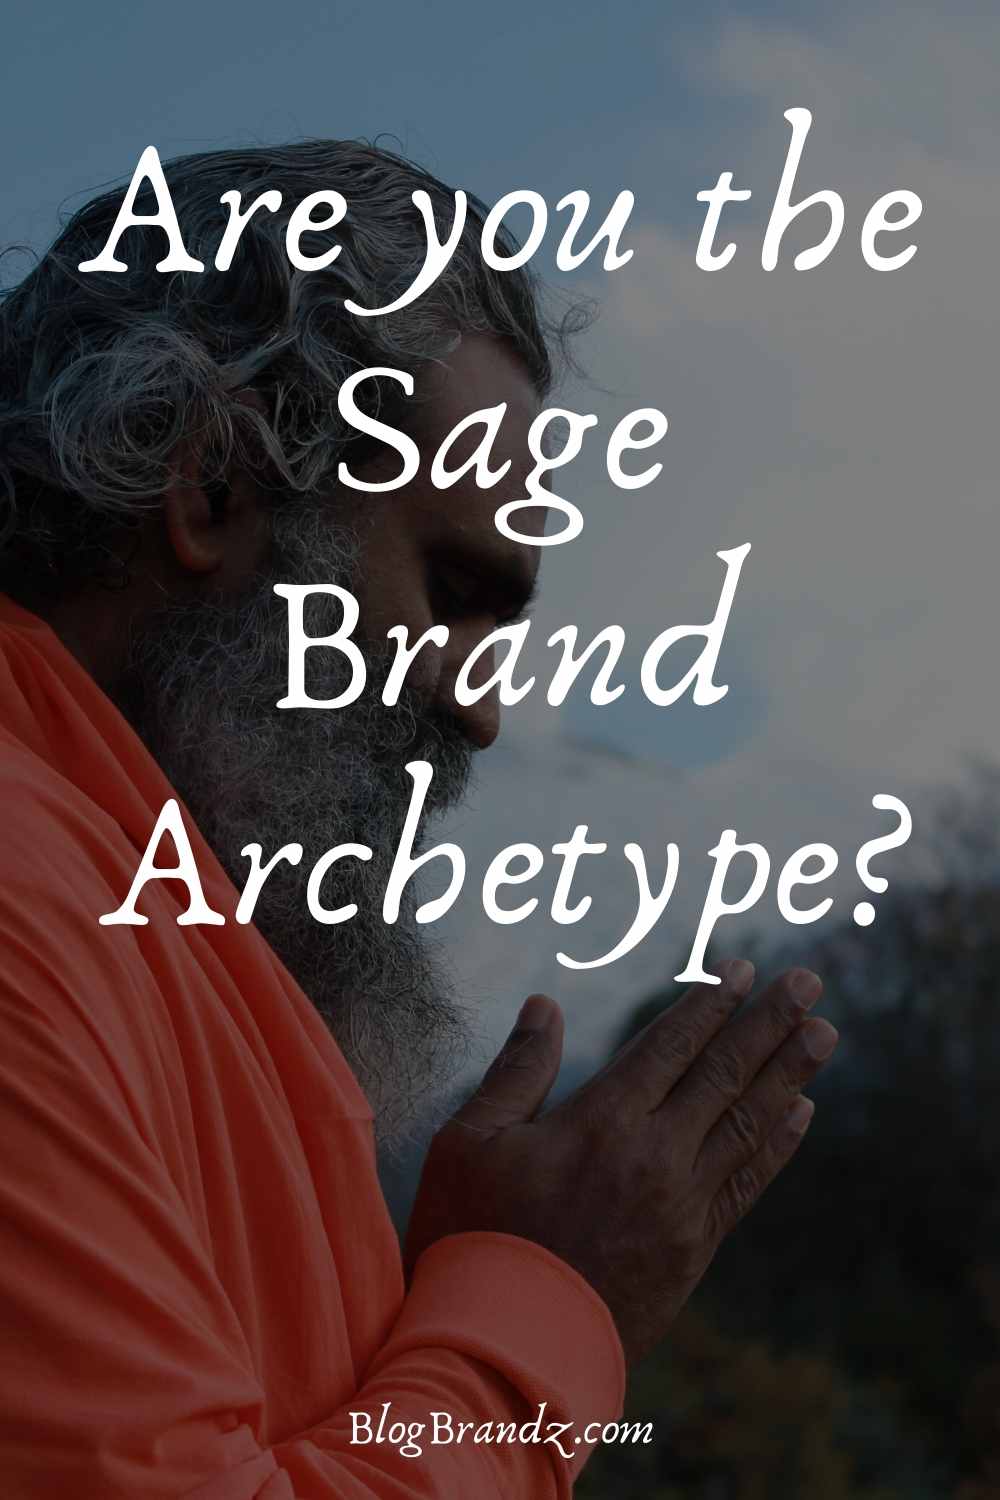 Brand Archetype Sage